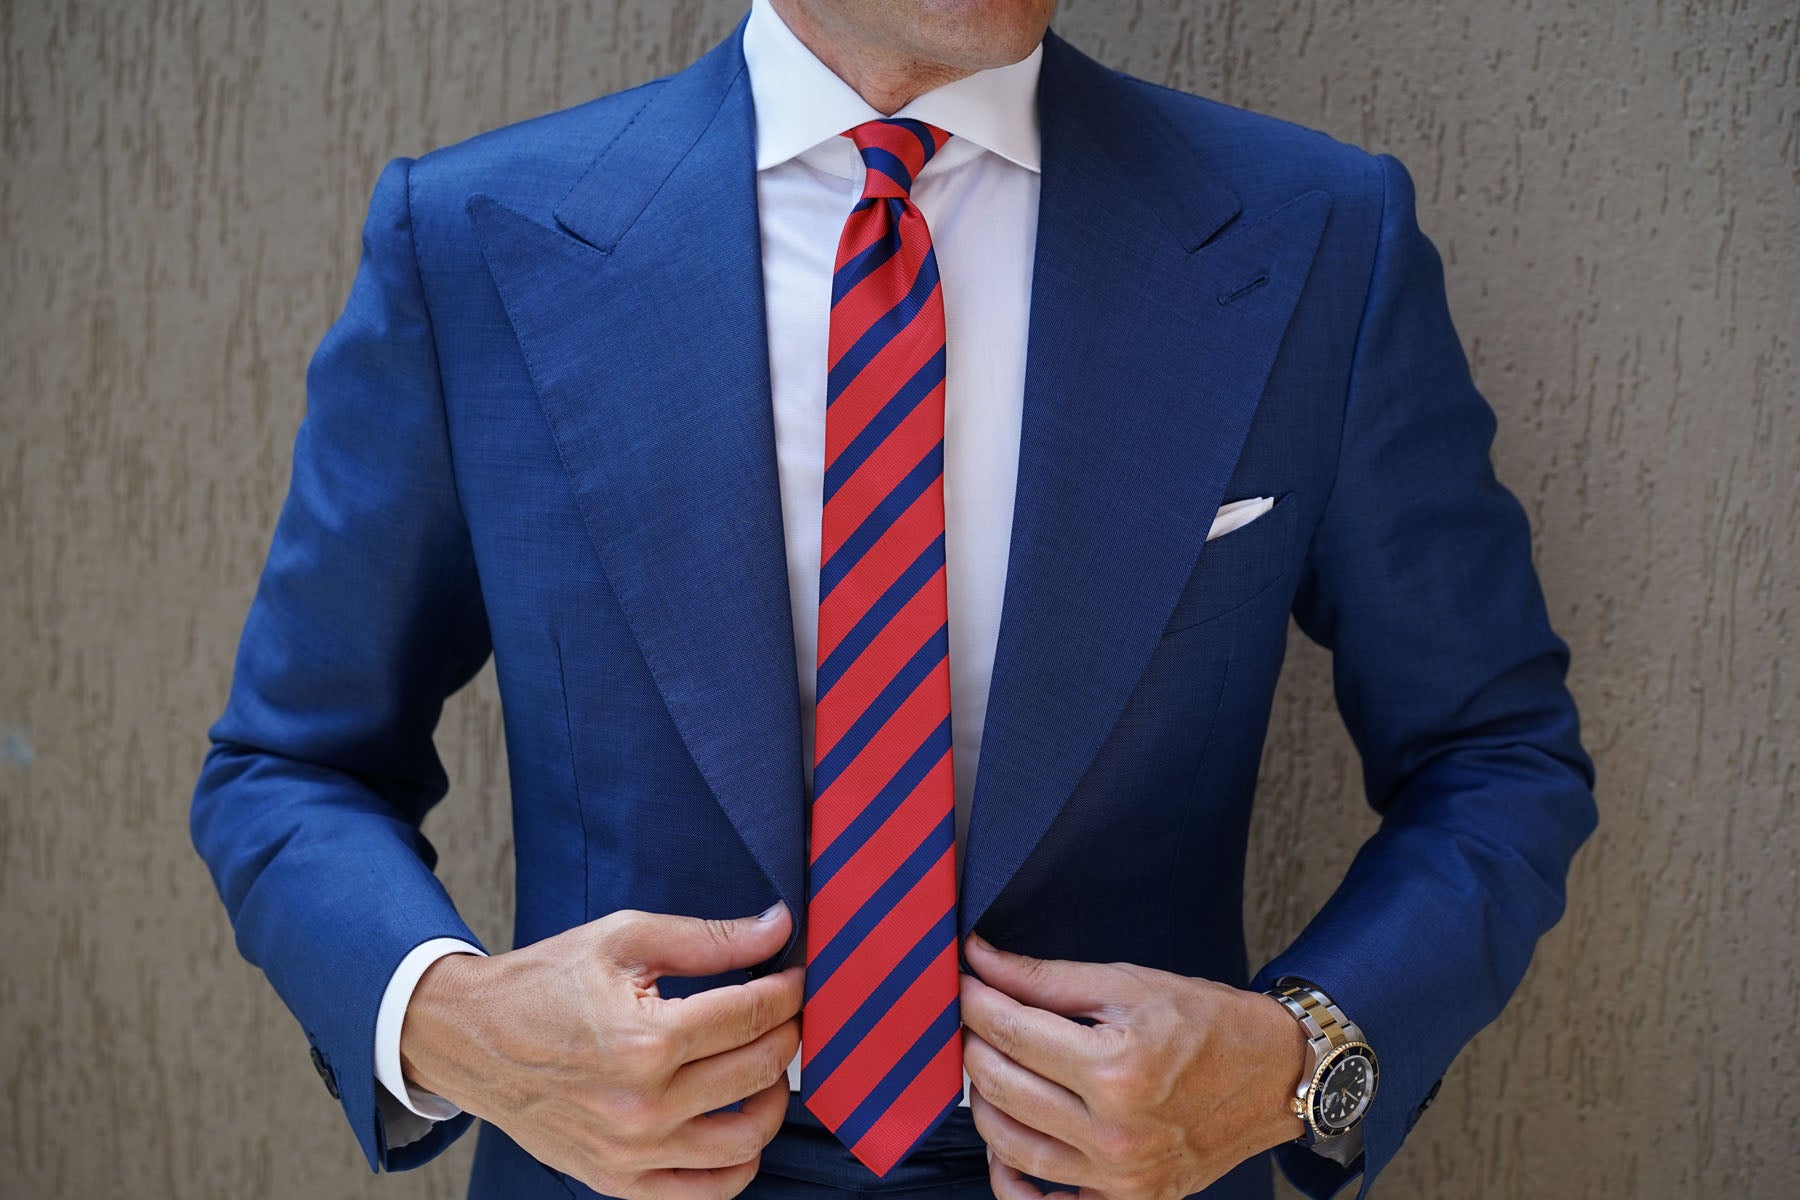 Red and Navy Blue Diagonal Skinny Tie | Regimental Slim Ties for Men | OTAA